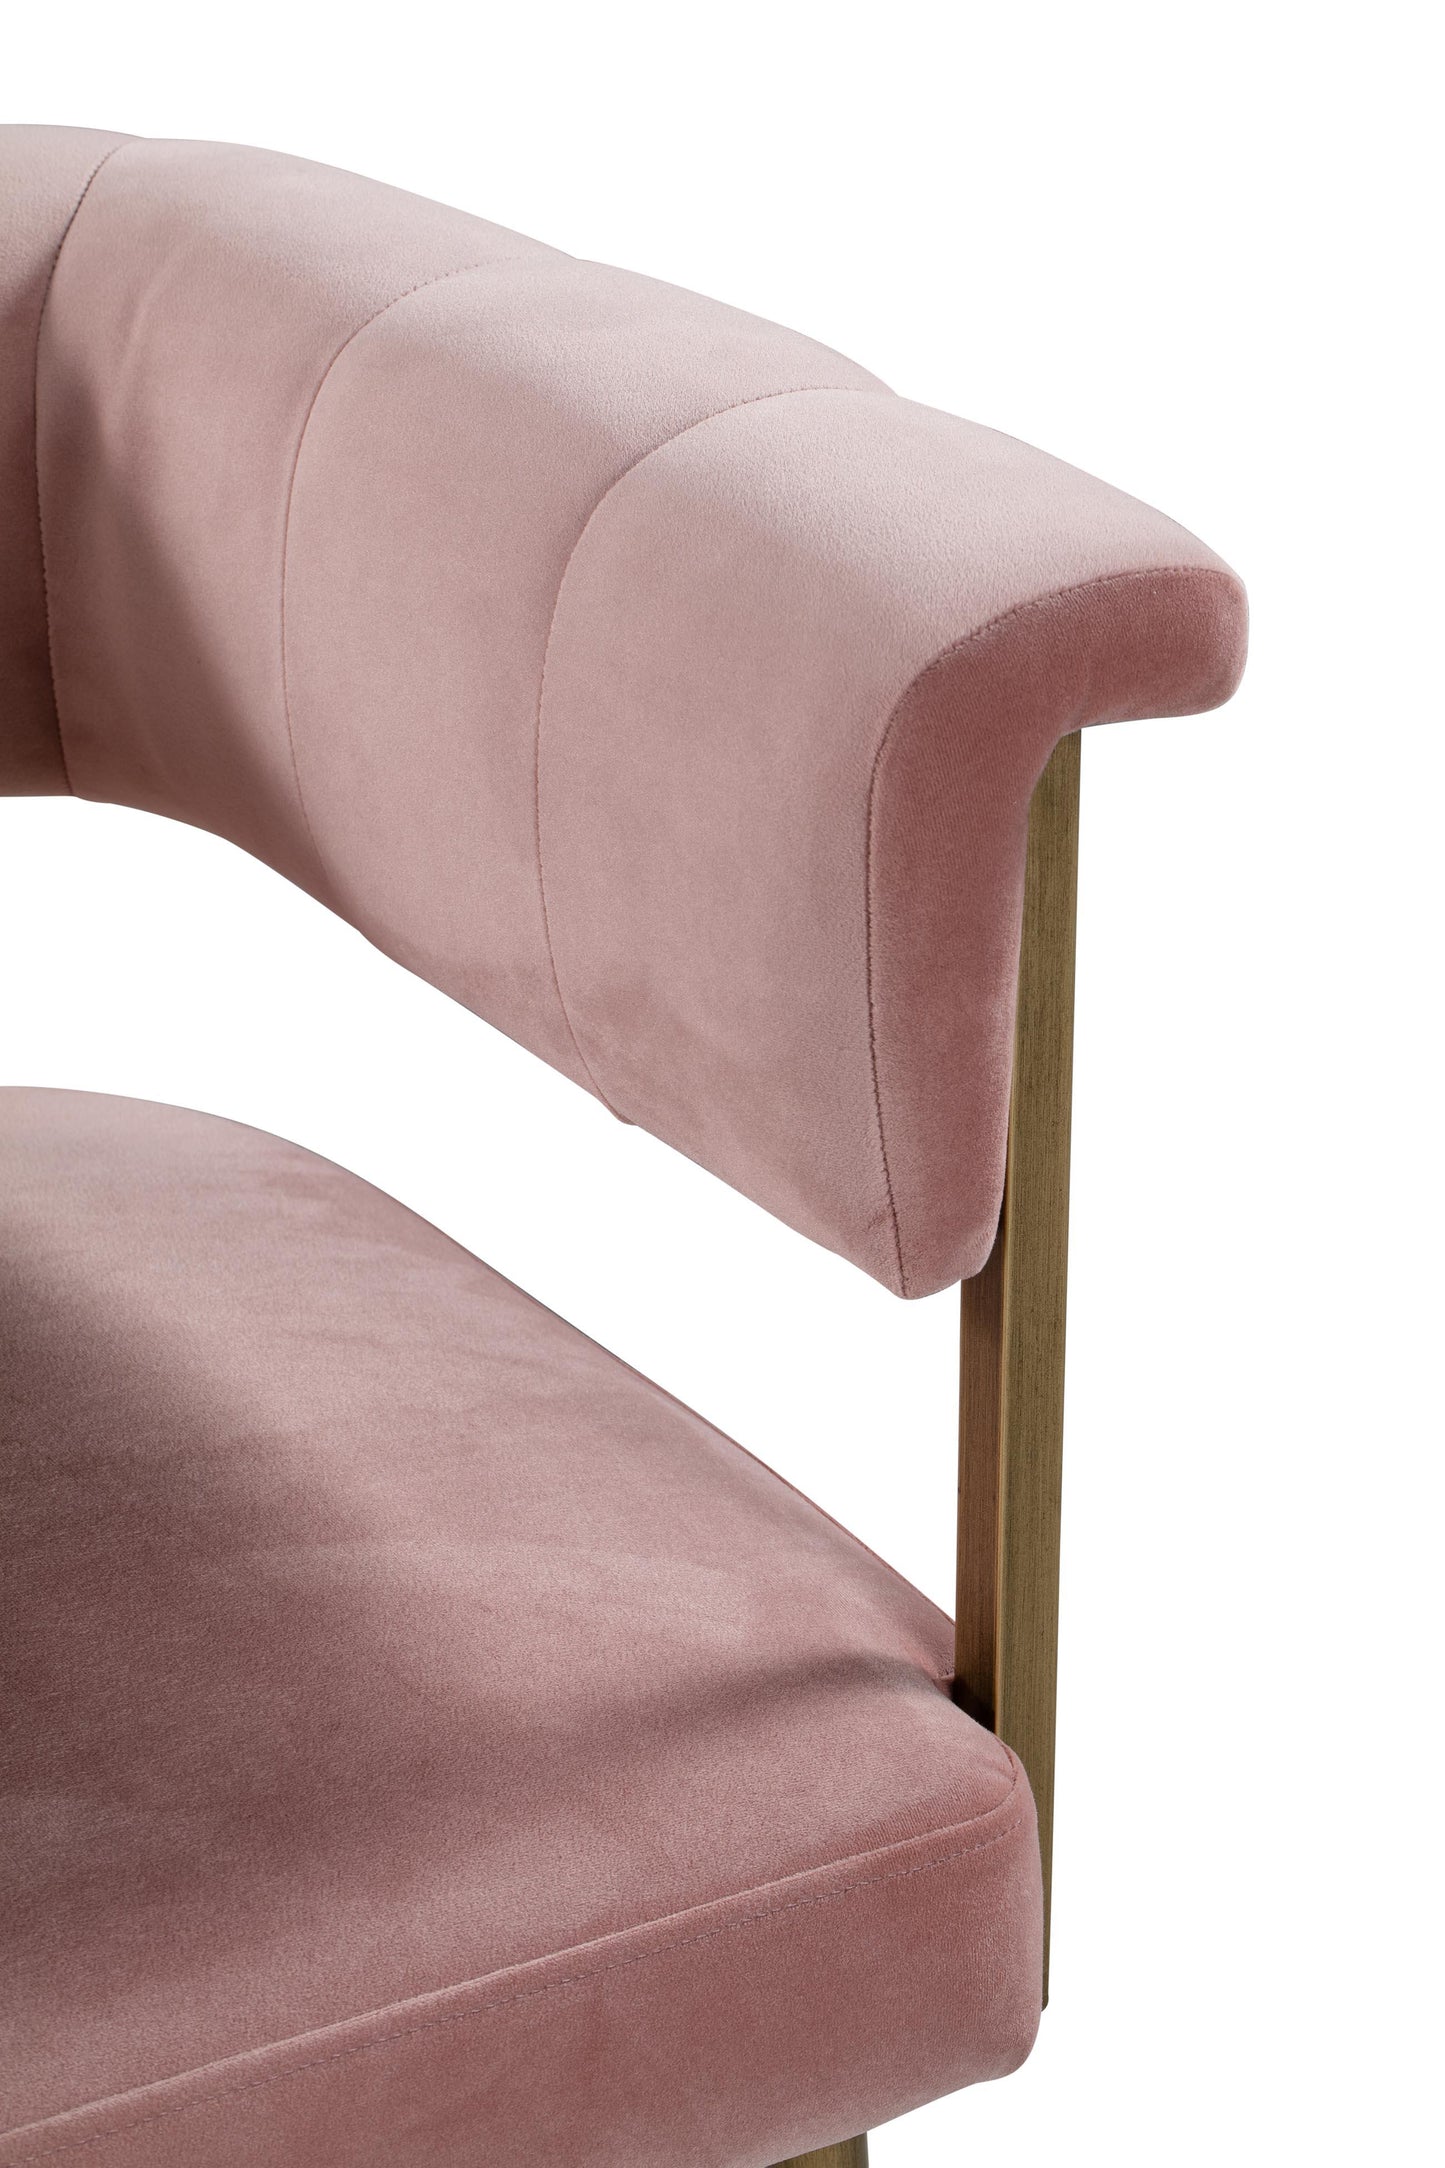 farah blush velvet counter stool